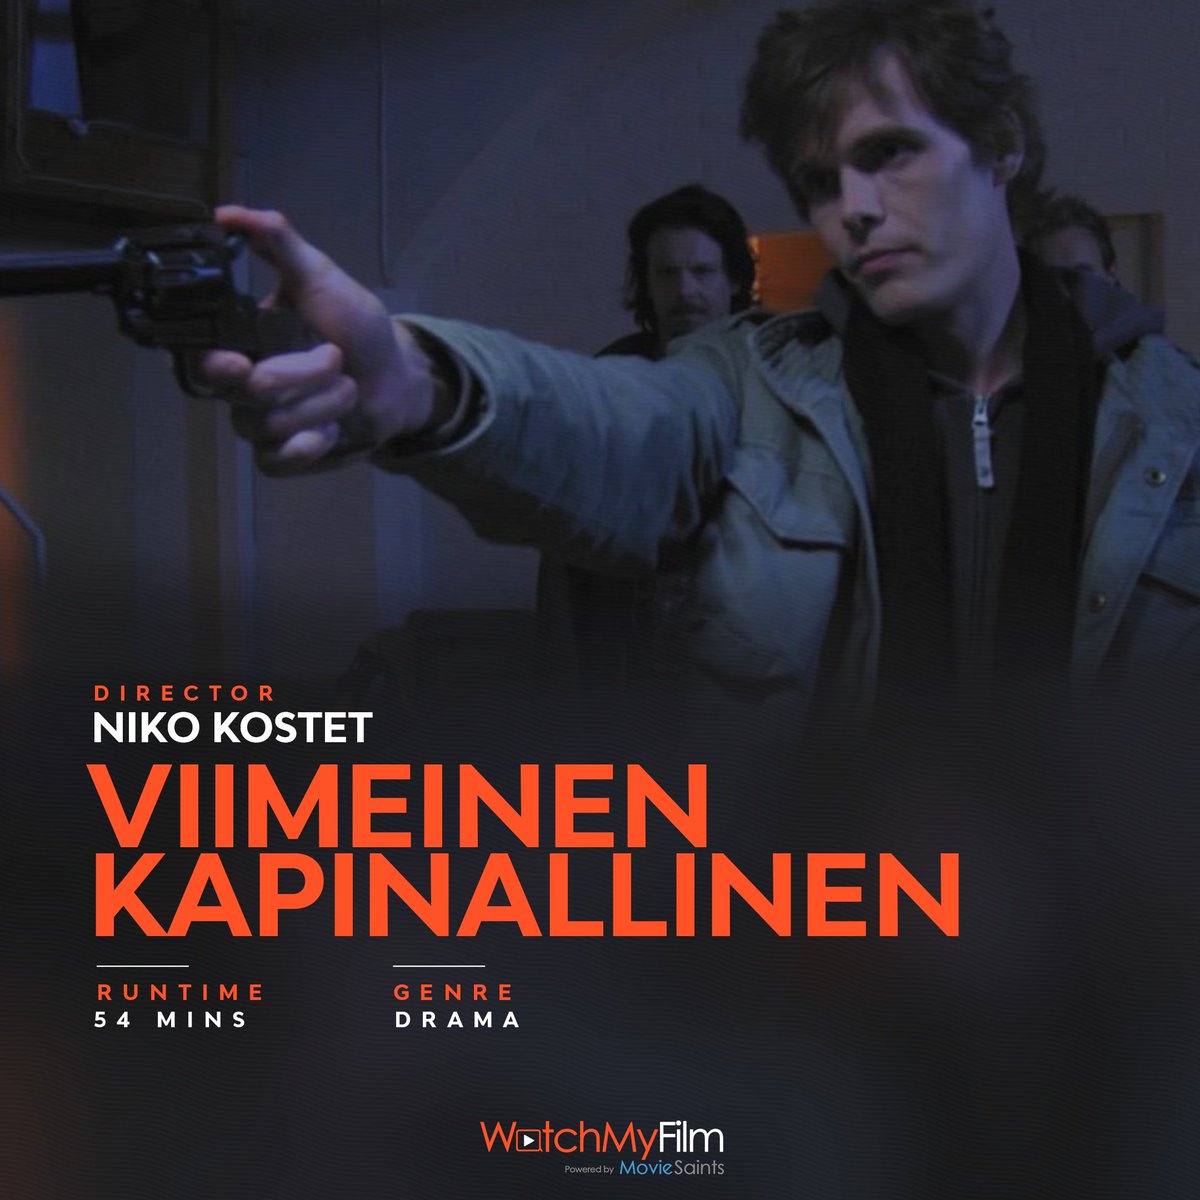 'Viimeinen Kapinallinen' by Niko Kostet is now available to watch on WatchMyFilm. 

Visit the link - linktr.ee/watchmyfilm

#cinephilecommunity #independentcinema #indiecinema #film